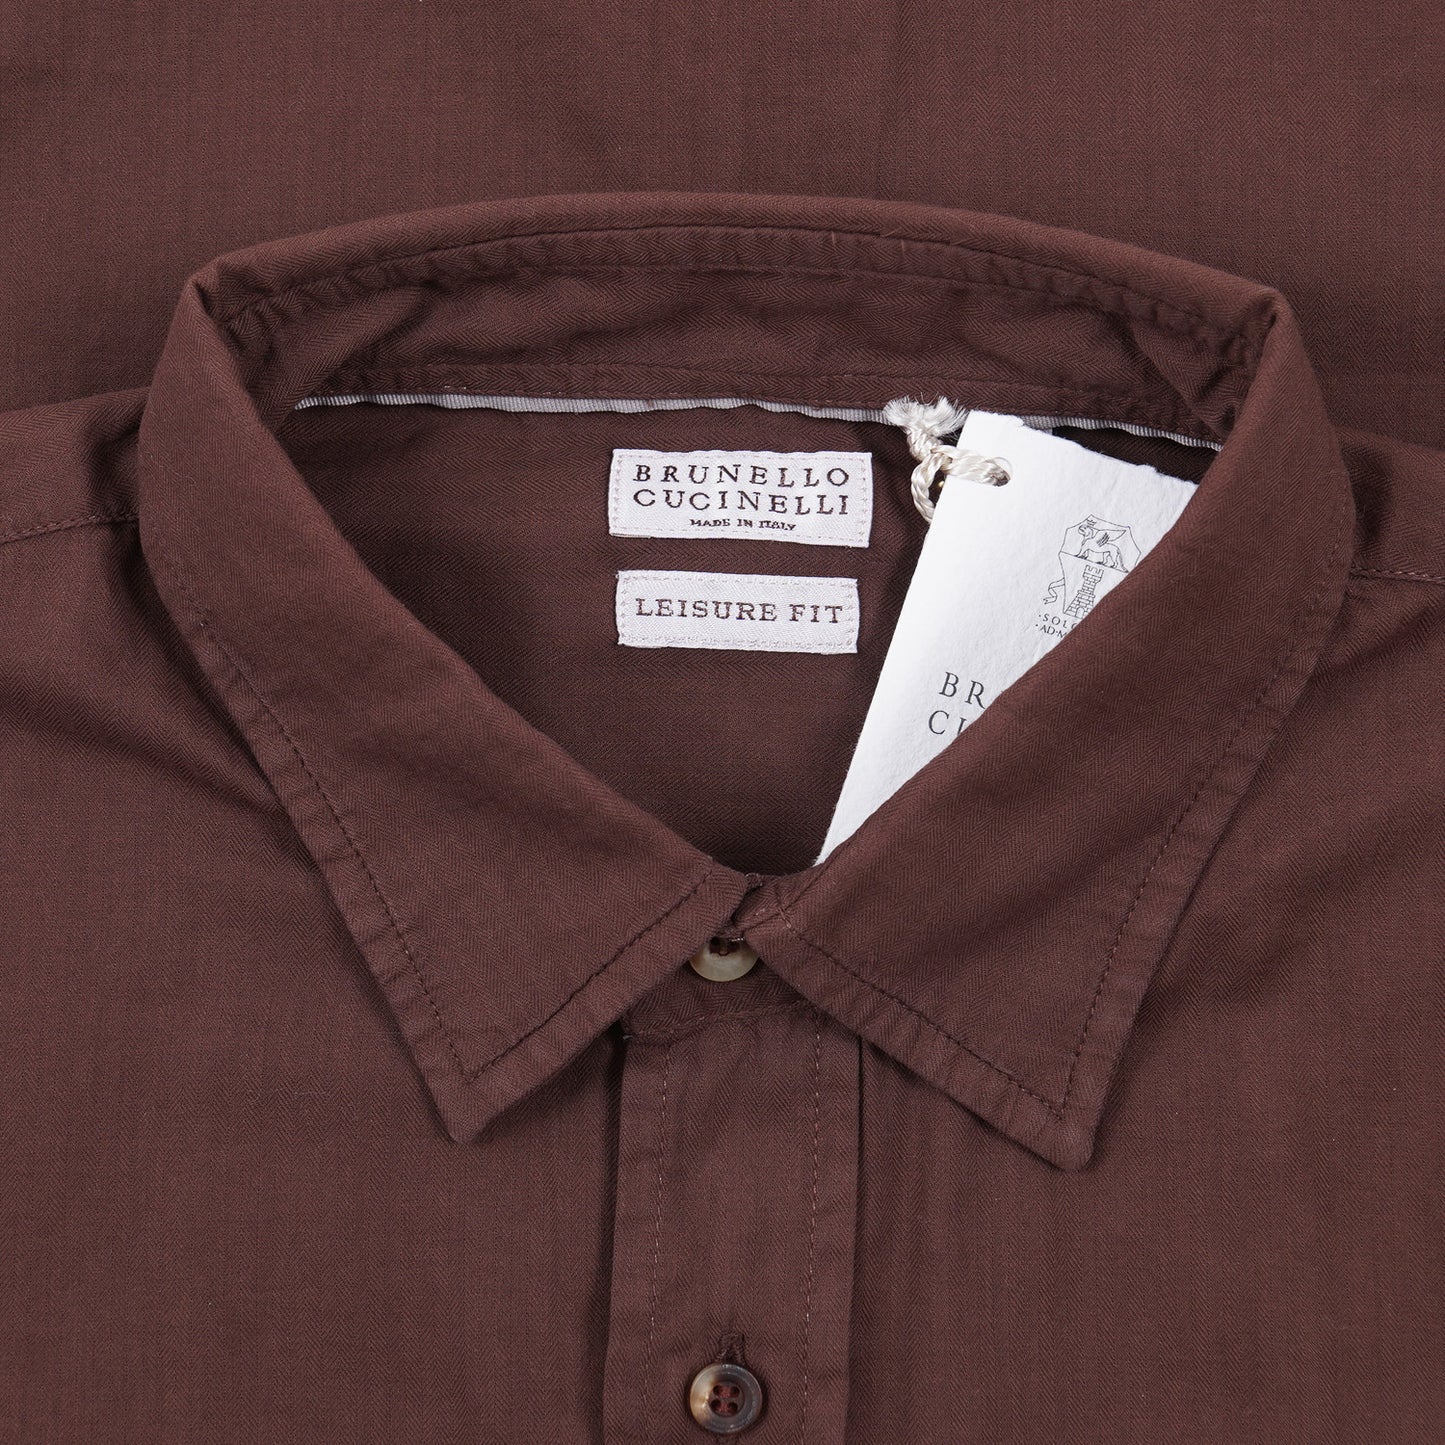 Brunello Cucinelli Lightweight Cotton Shirt - Top Shelf Apparel